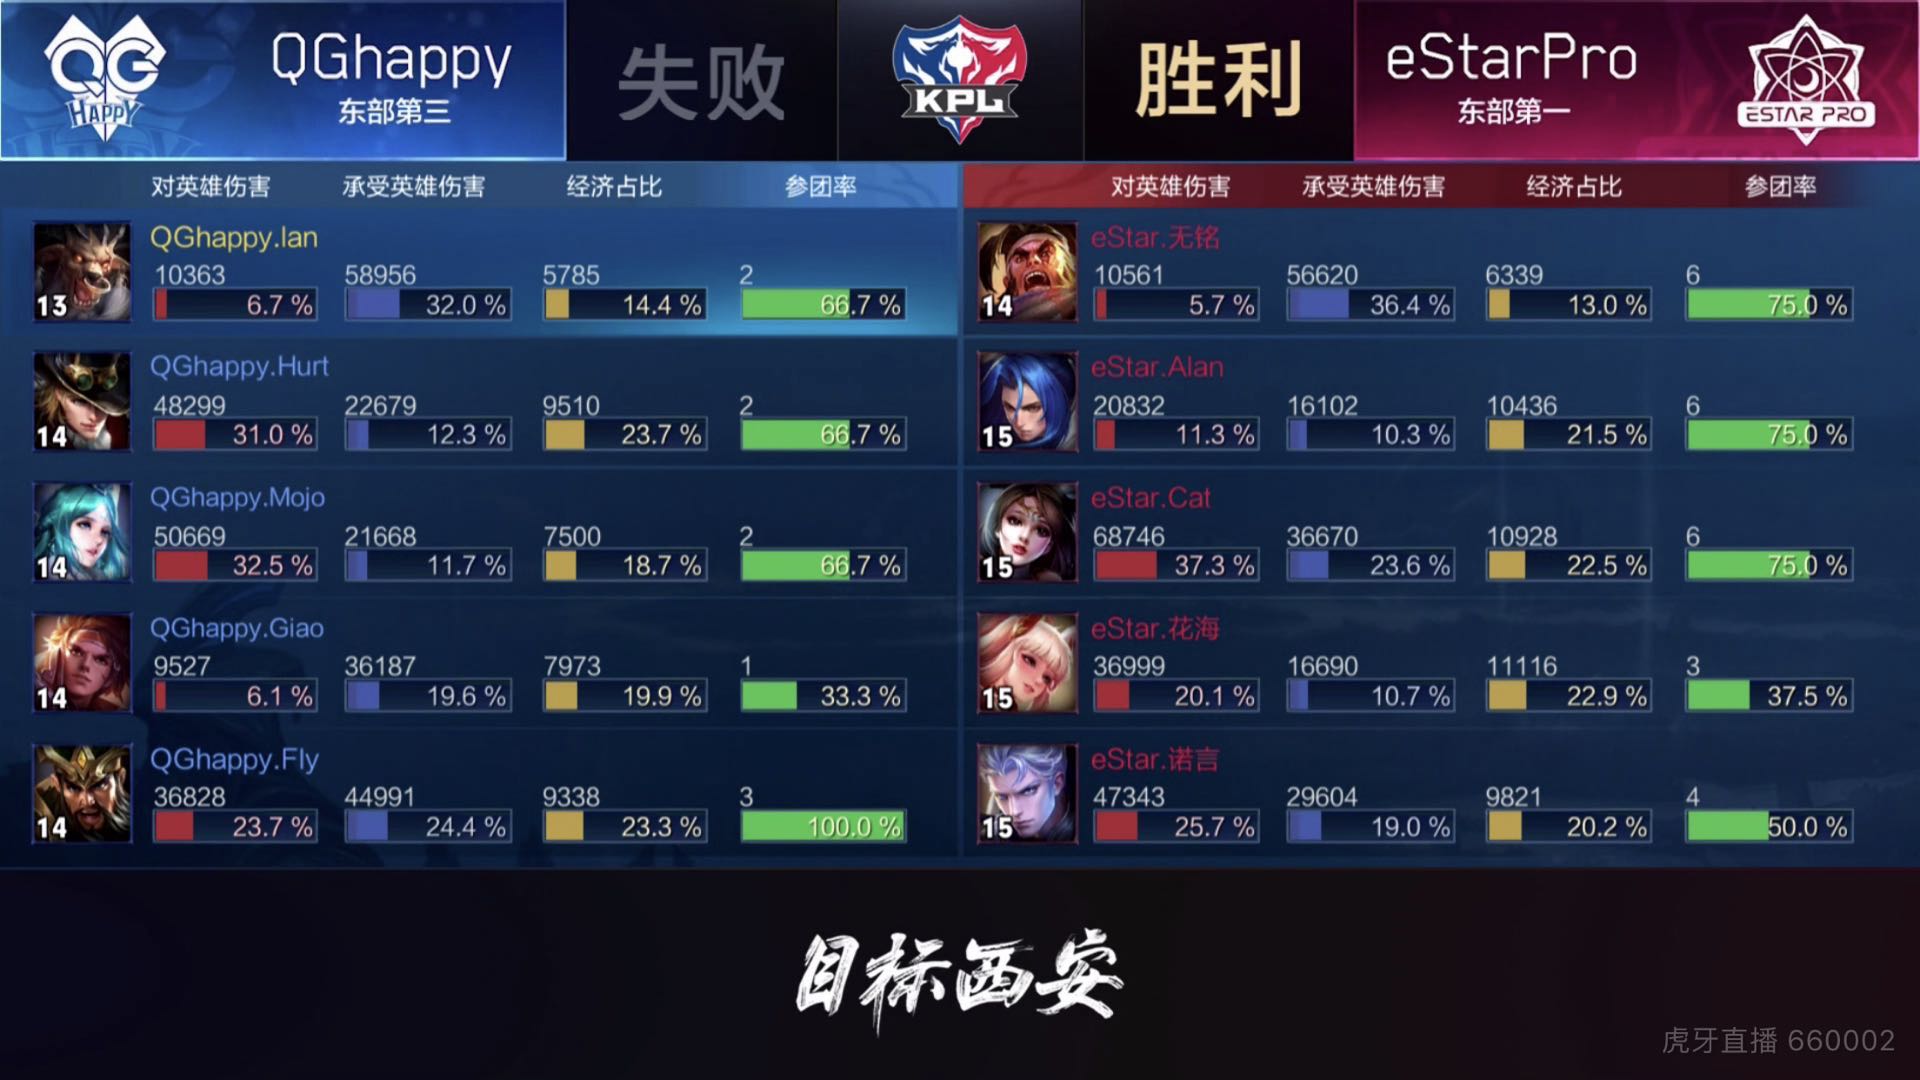 [战报] eStarPro四比一战胜QGhappy 成功进入下一轮！